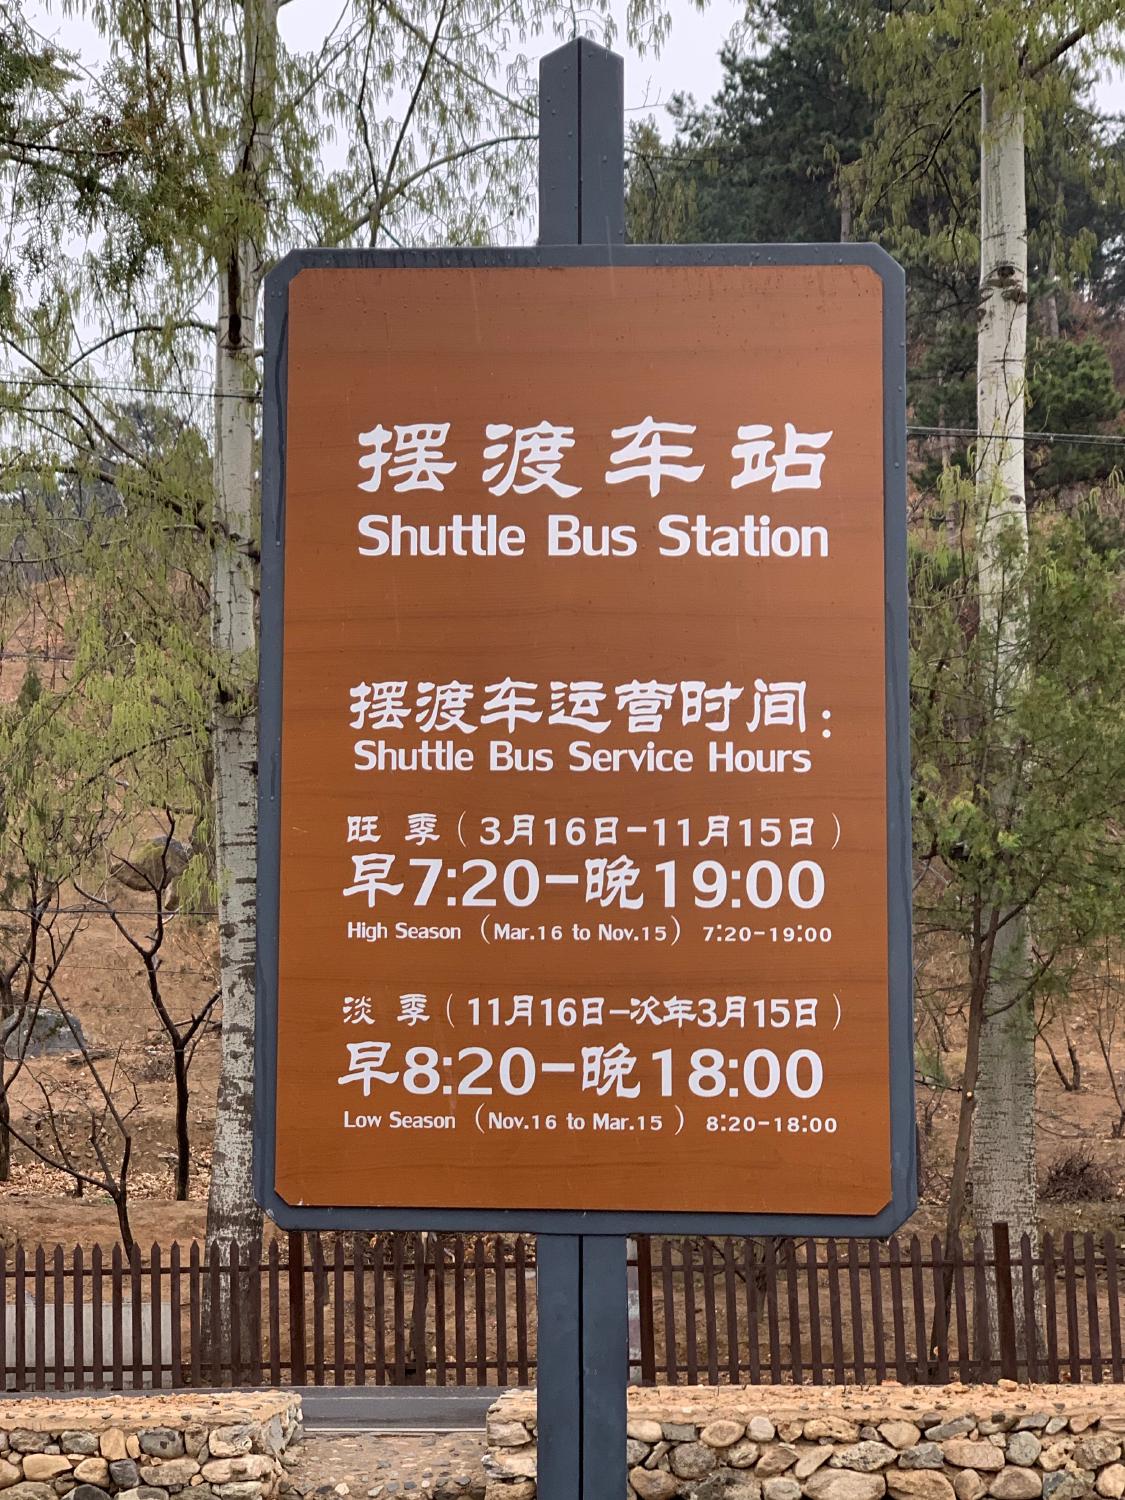 Shuttle Bus Timetable, April 2019